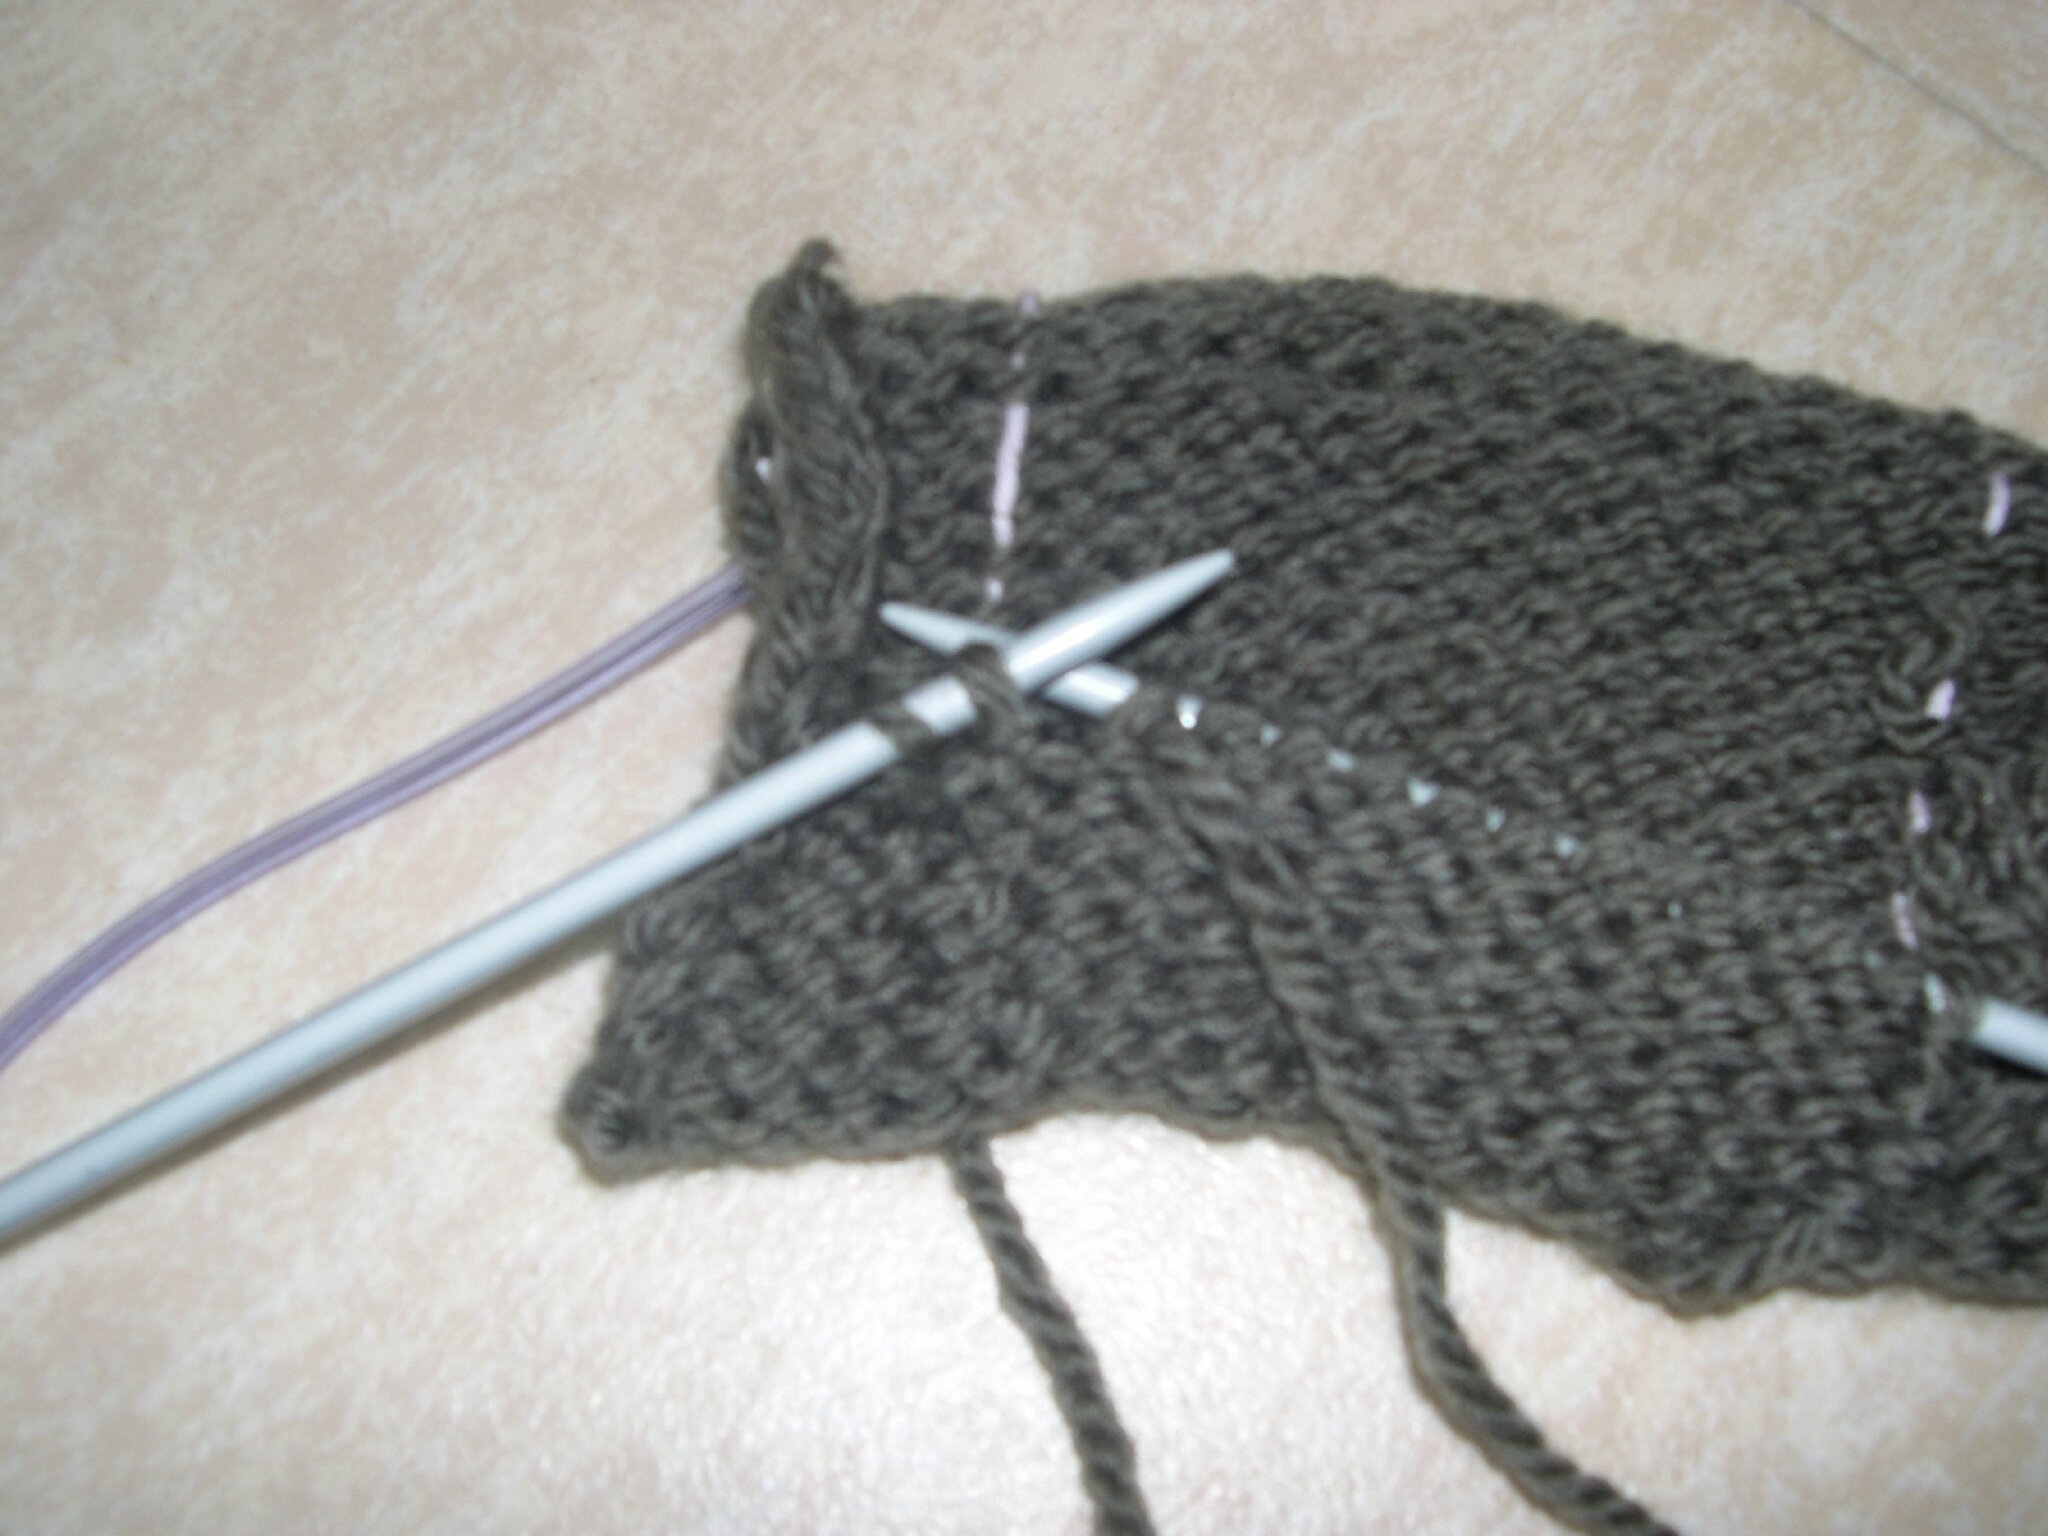 tricoter une poche sur un gilet